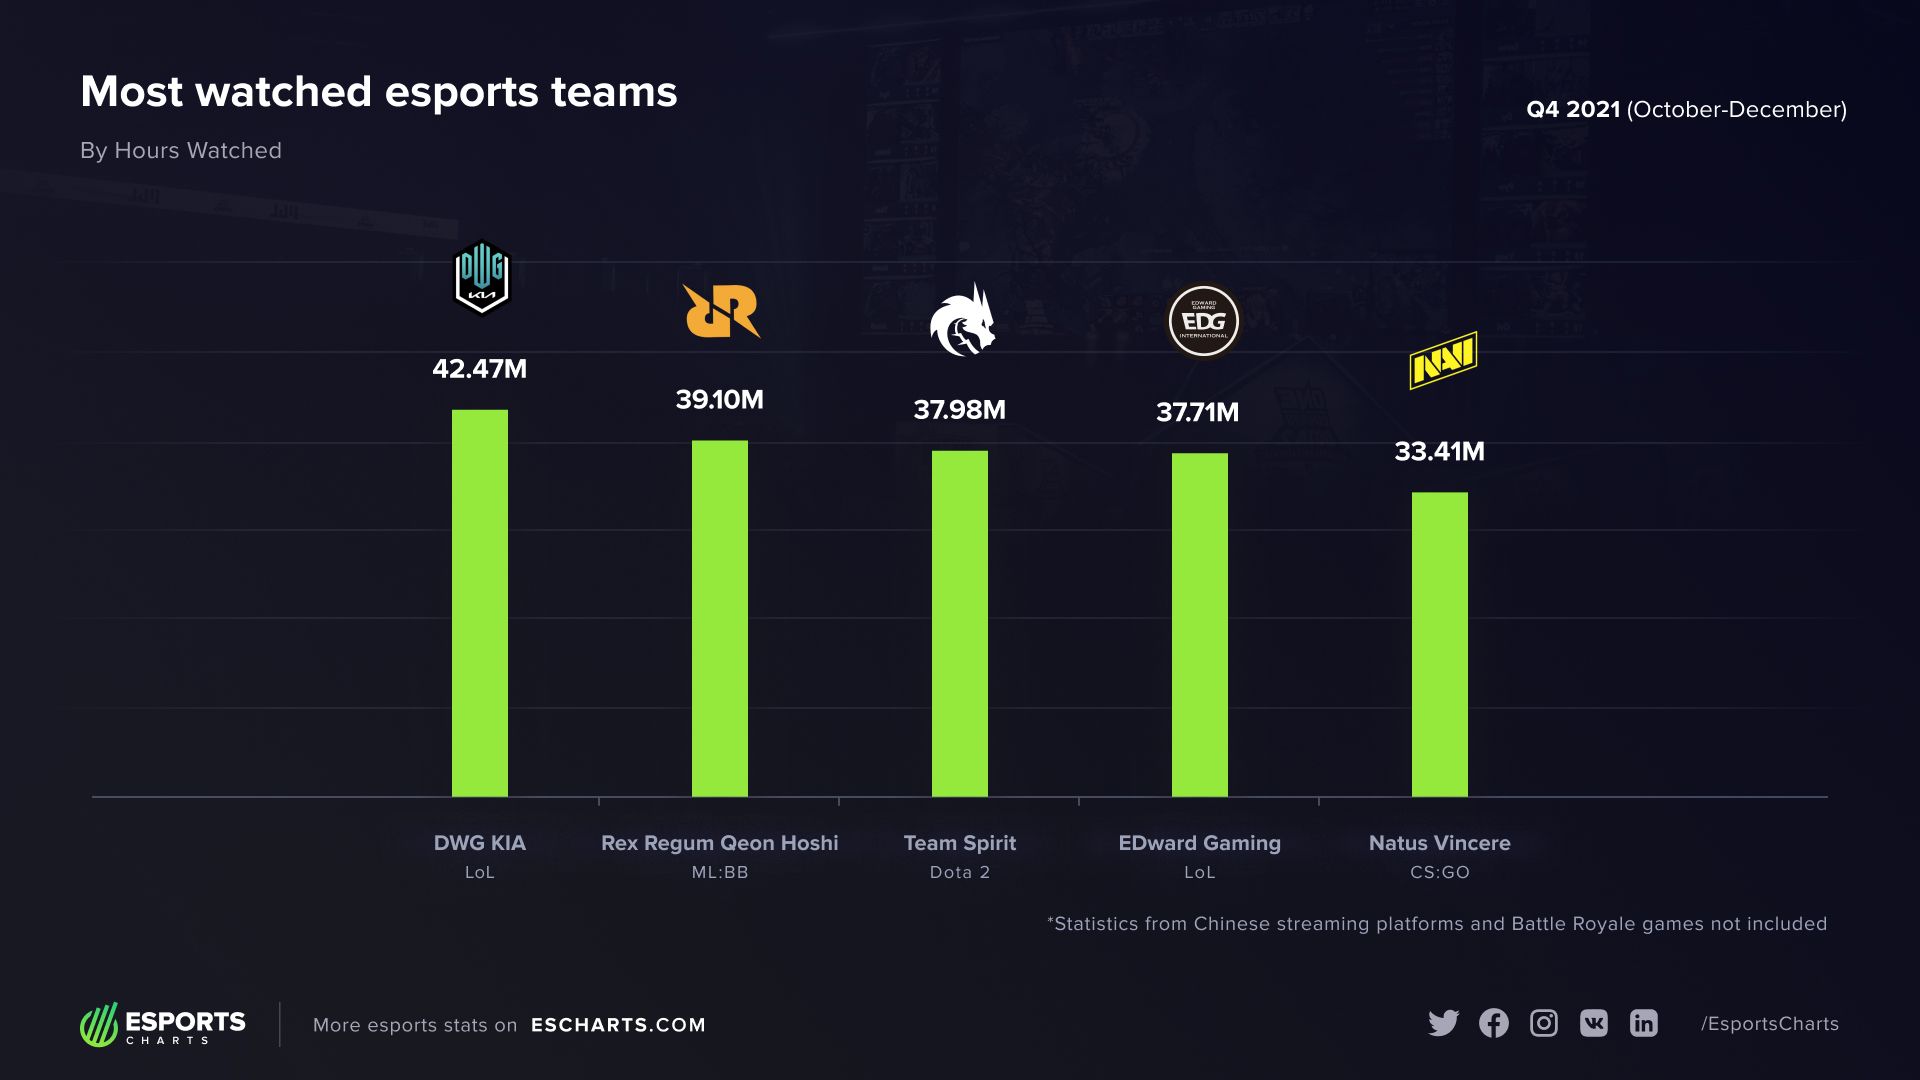 Рейтинг самых популярных команд в четвёртом квартале 2021 года | Источник: Esports Charts